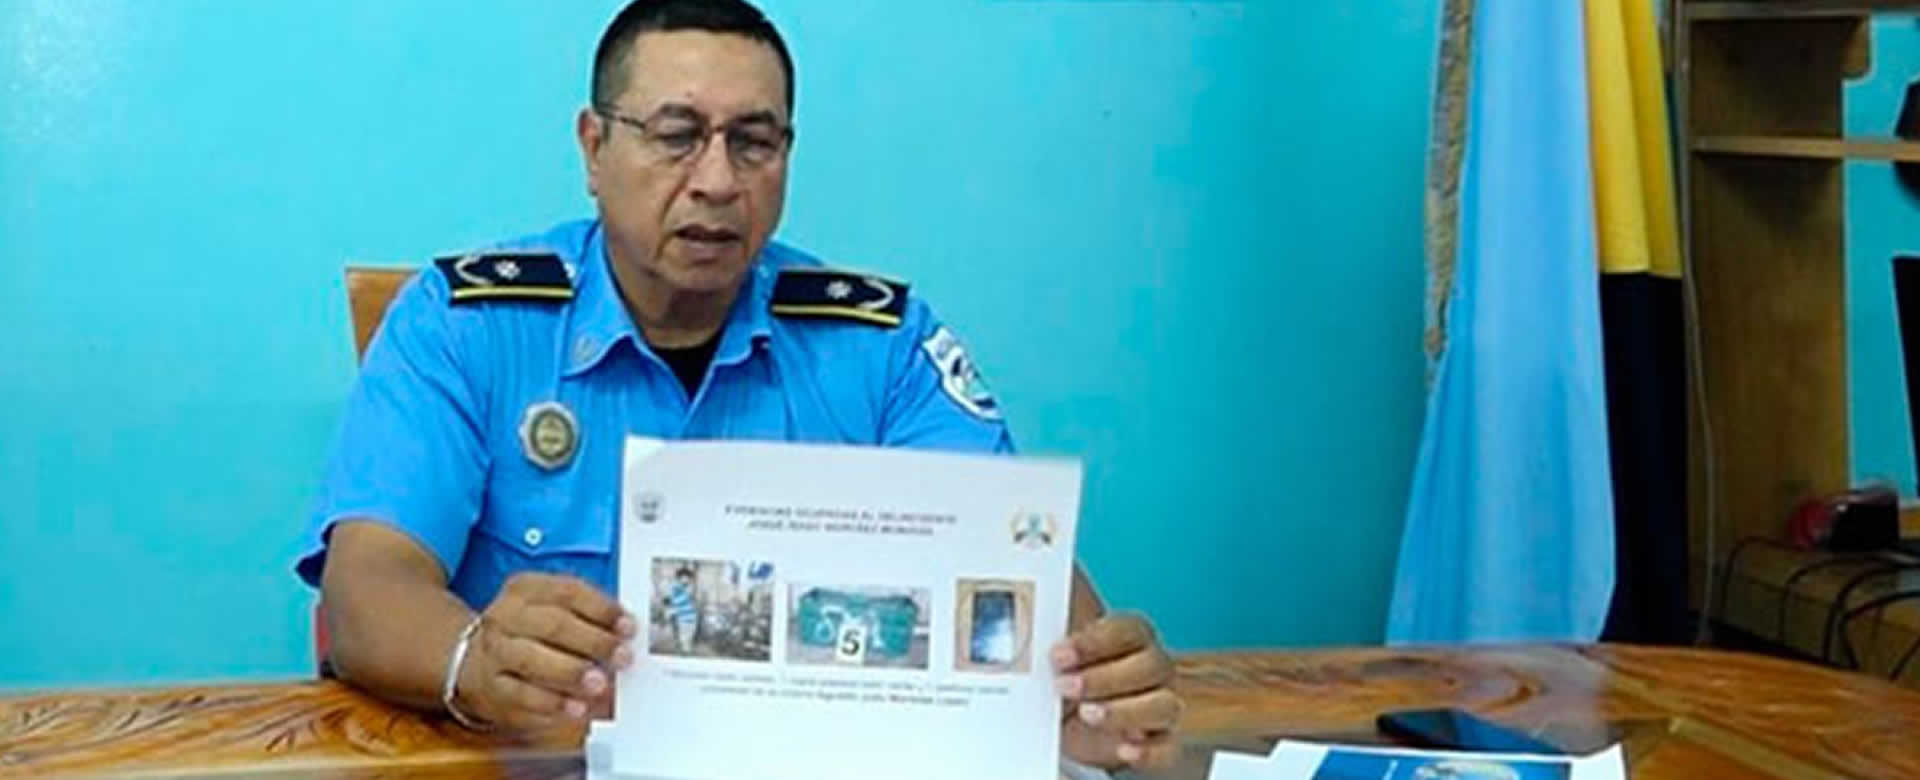 Policía Nacional presenta a presunto autor de asesinato en Nandasmo